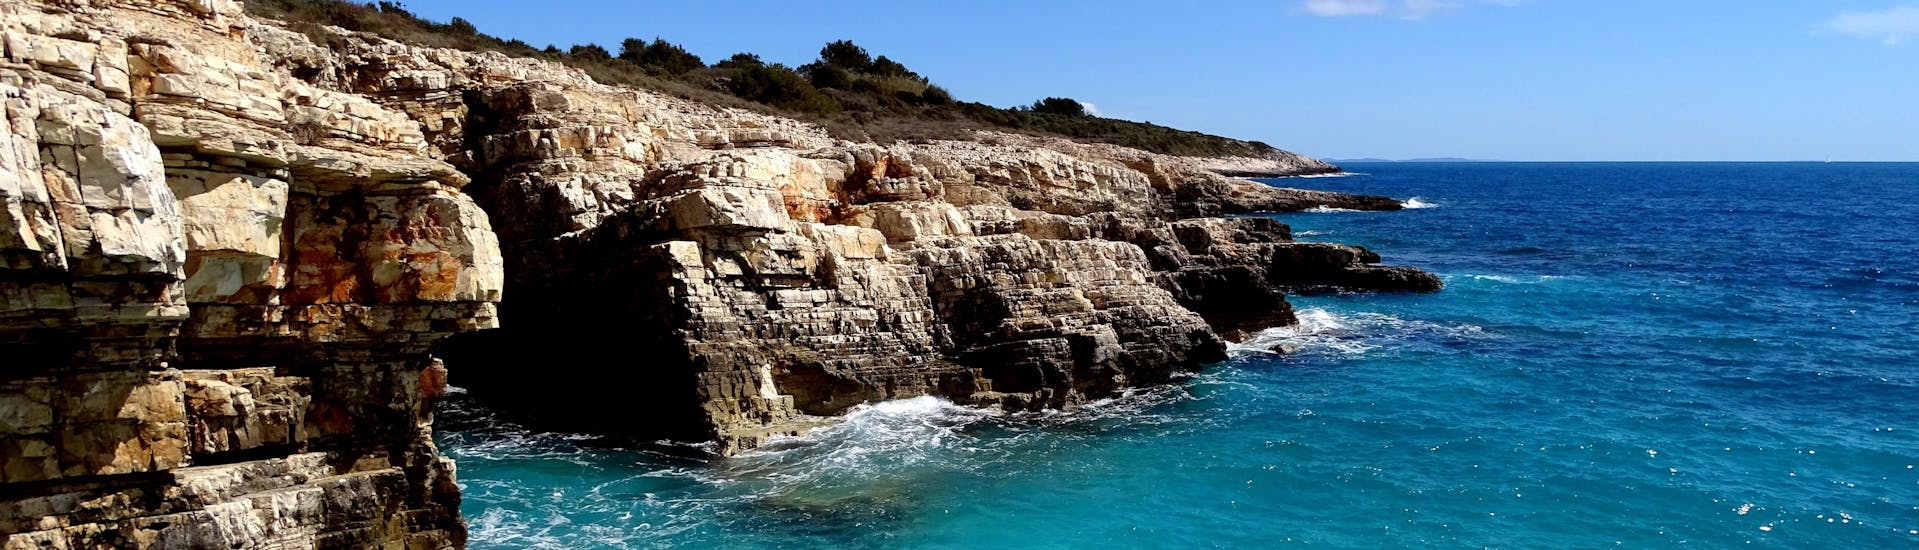 Foto van water dat tegen Kaap Kamenjak botst, een mooie bestemming voor boottochten in Istrië, Kroatië.